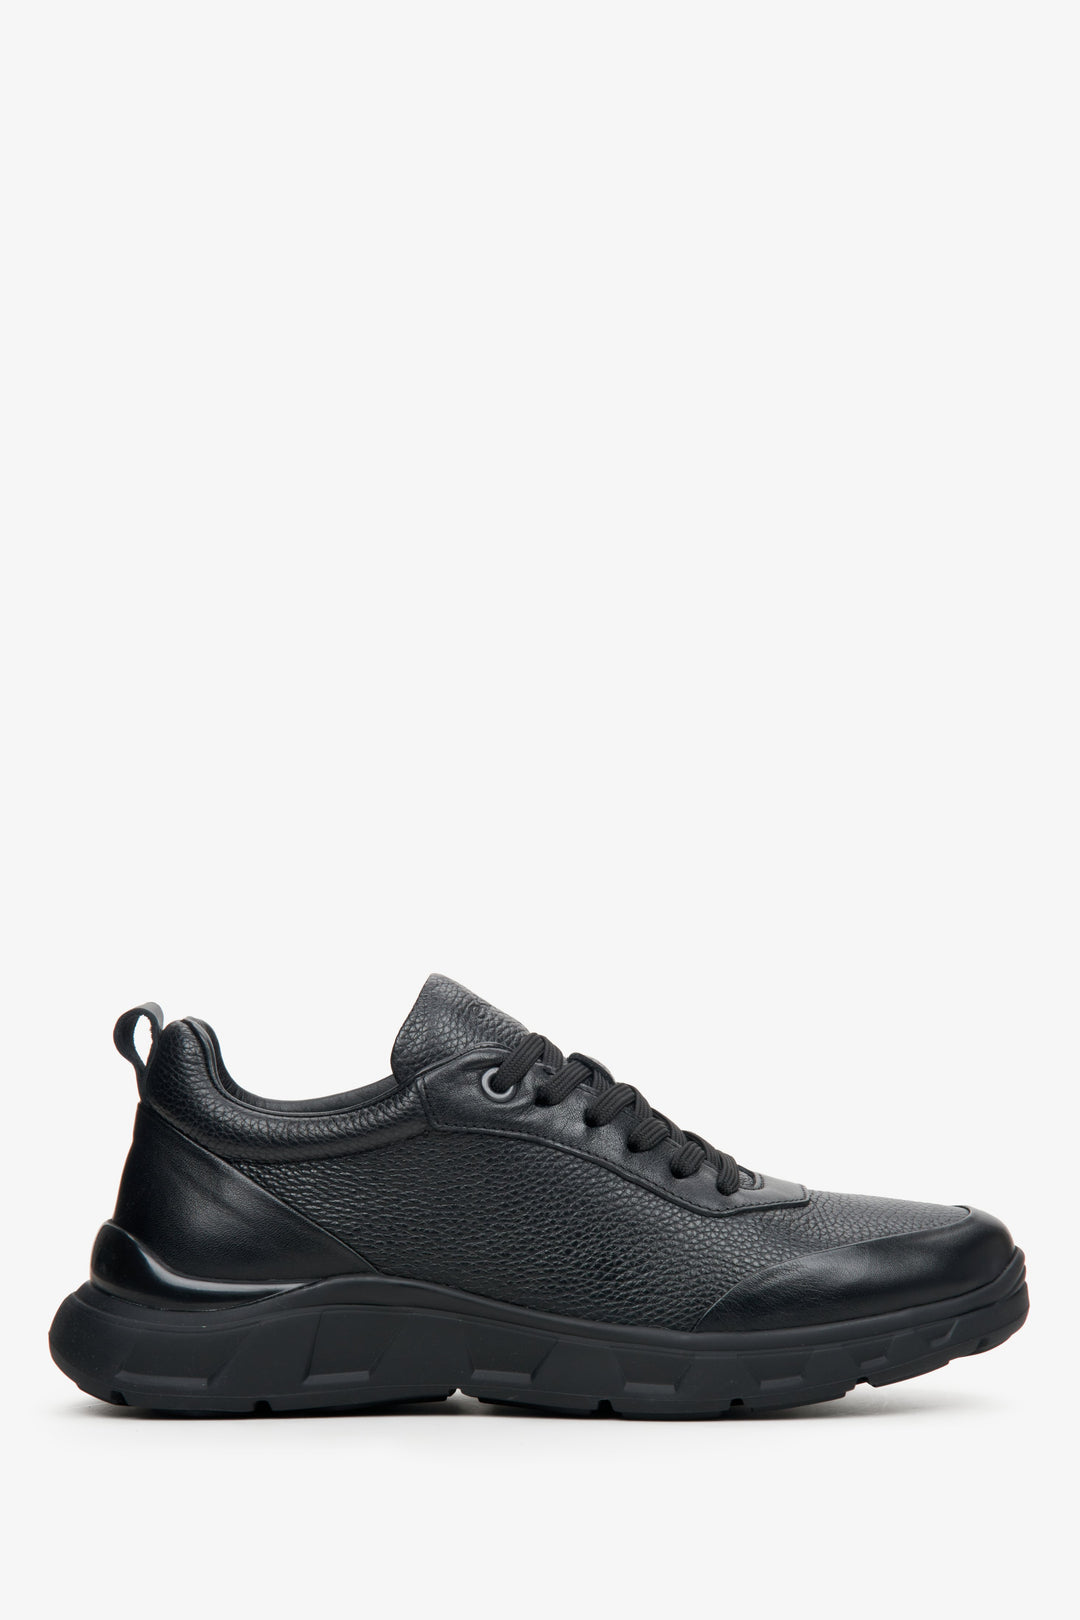 Skórzane sneakersy męskie w kolorze czarnym Estro - profil buta.